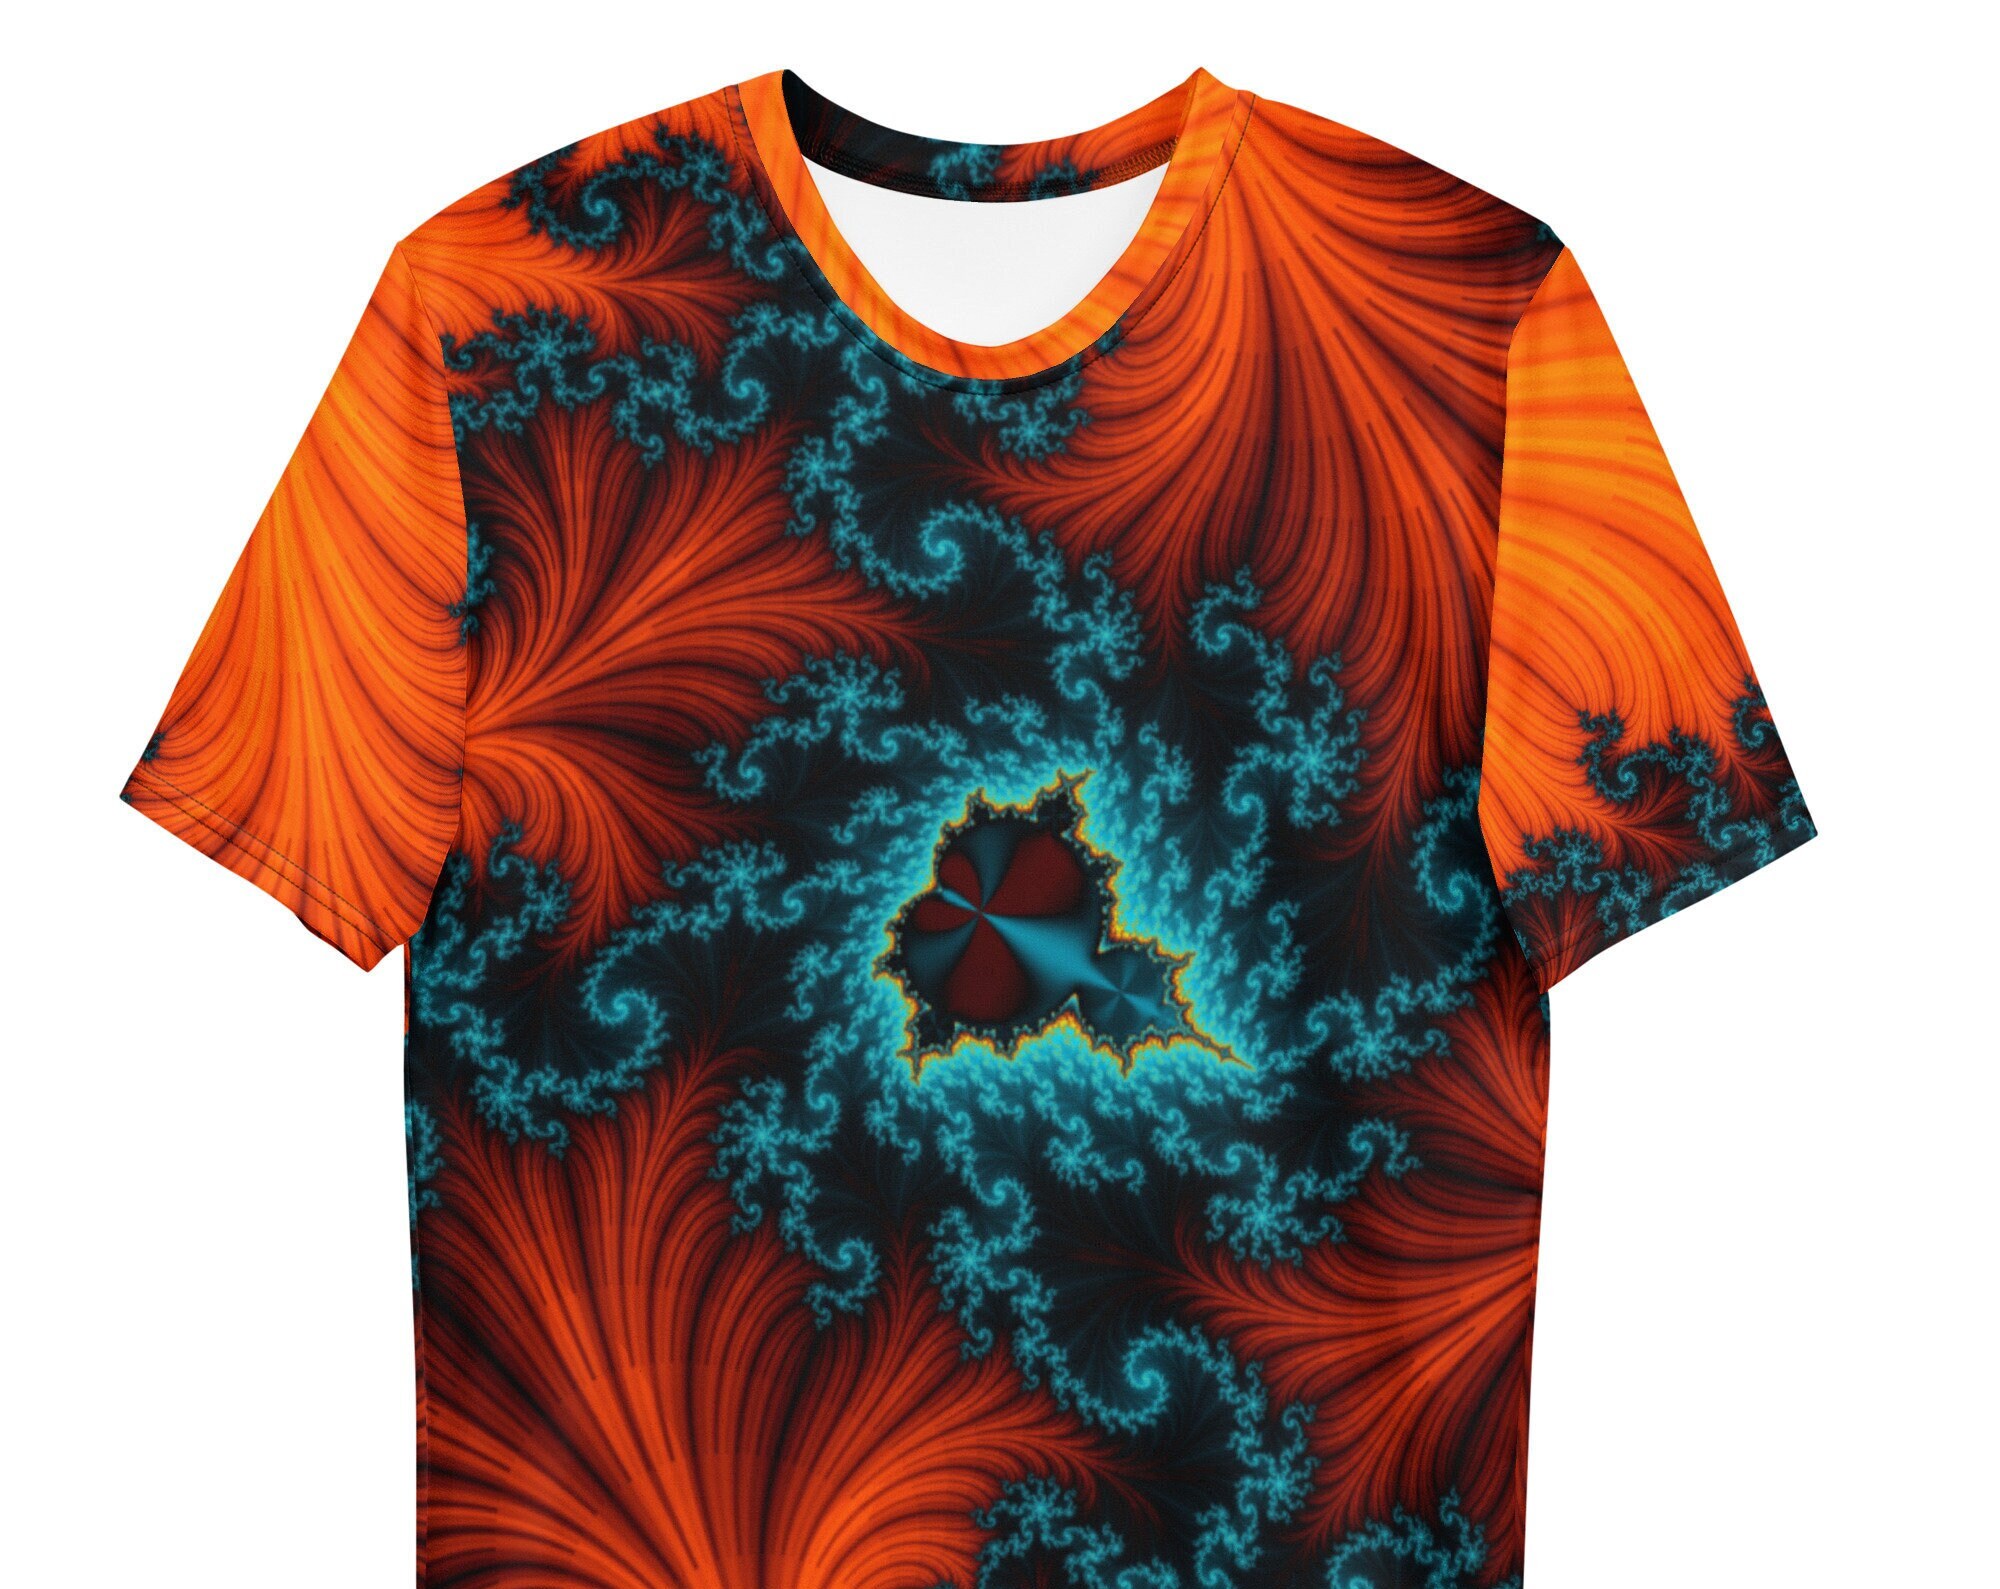 Discover 3D Shirt - Orange Mandelbro Fractal